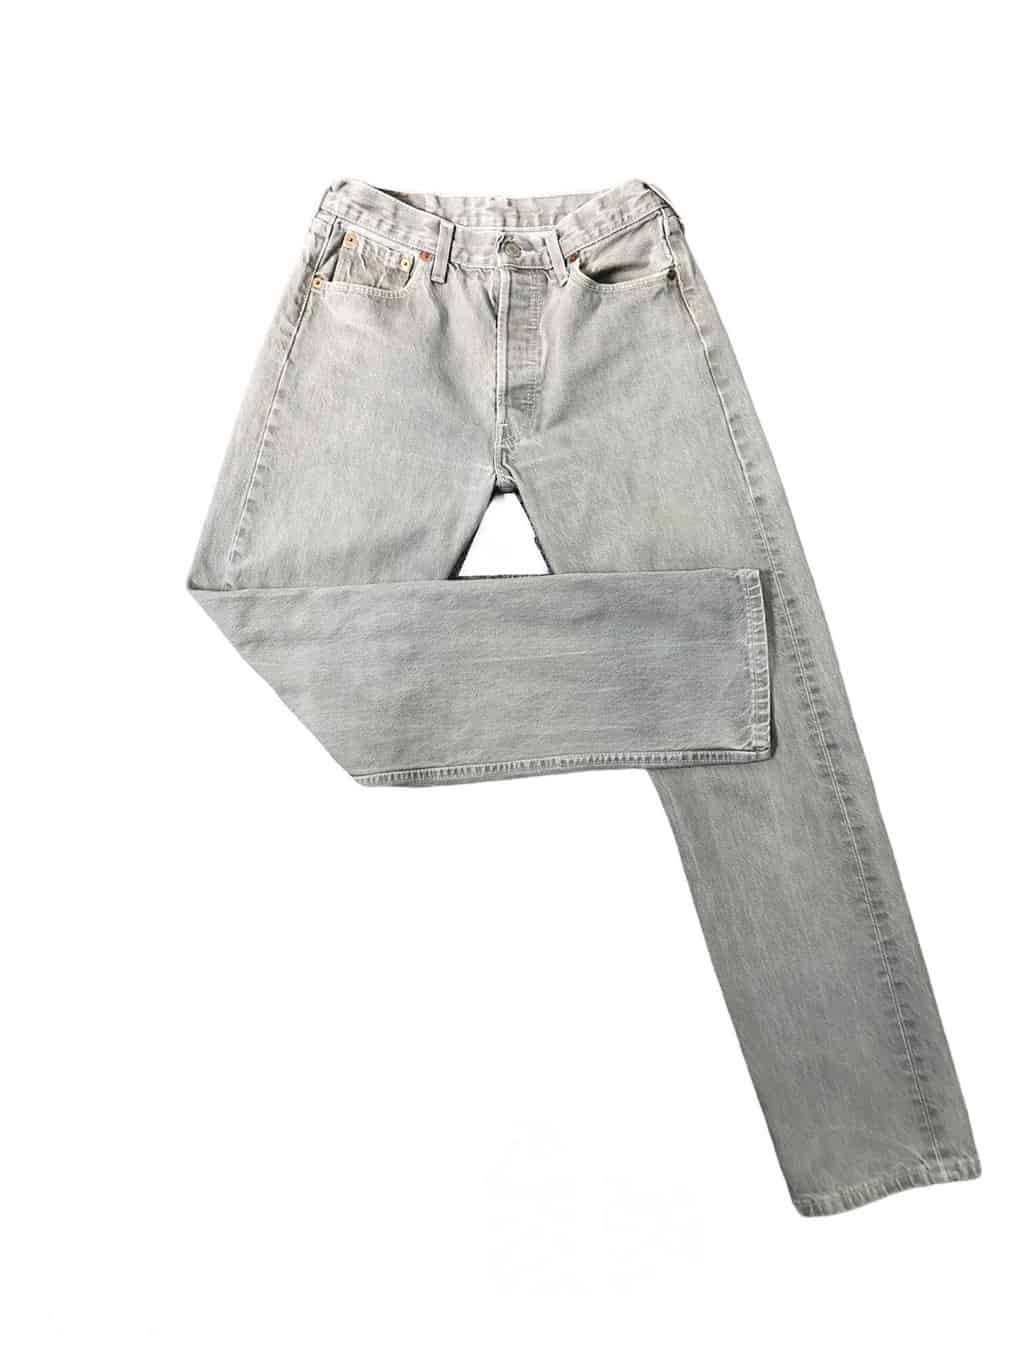 gebonden vonk herstel 1990s vintage rare Levis 501xx jeans in light grey denim - W28 x L30 - St  Cyr Vintage